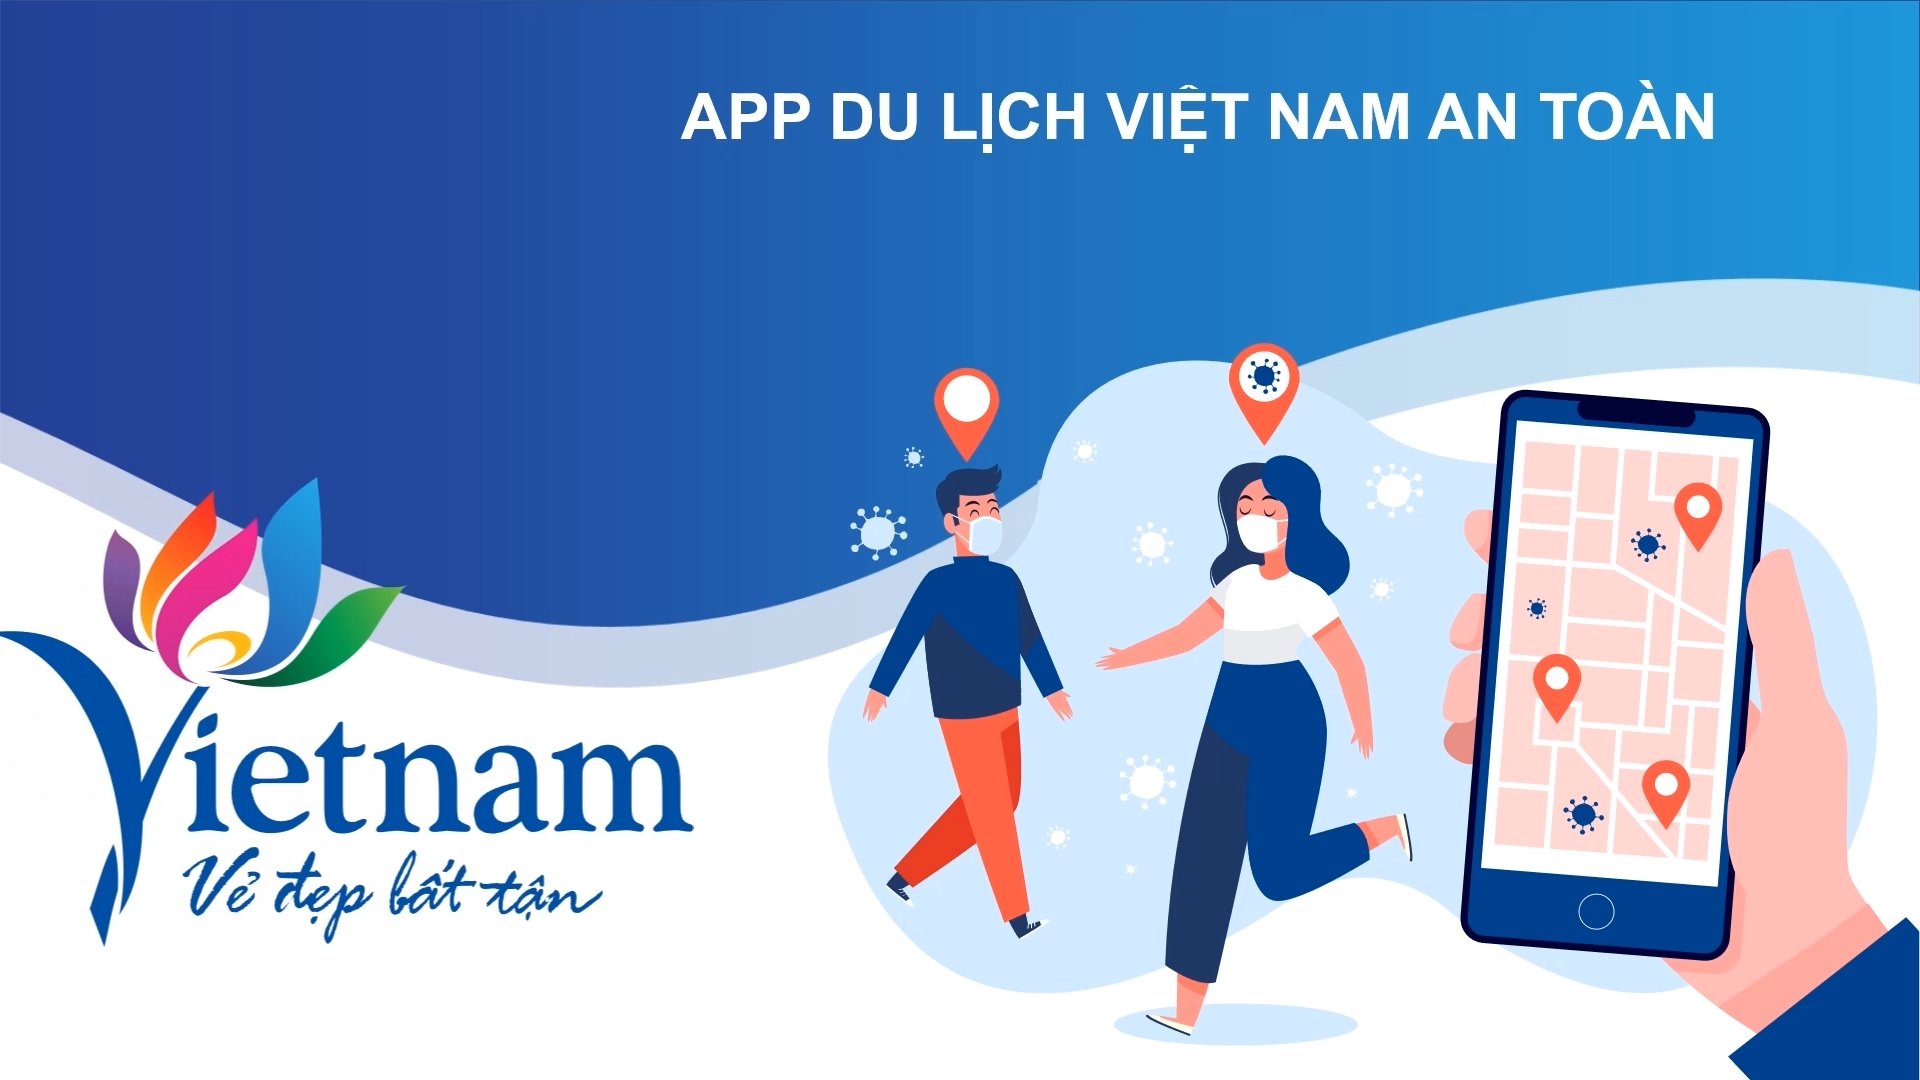 Ứng dụng “Du lịch Việt Nam an toàn” – công cụ quan trọng thúc đẩy kích cầu du lịch và bảo vệ quyền lợi du khách